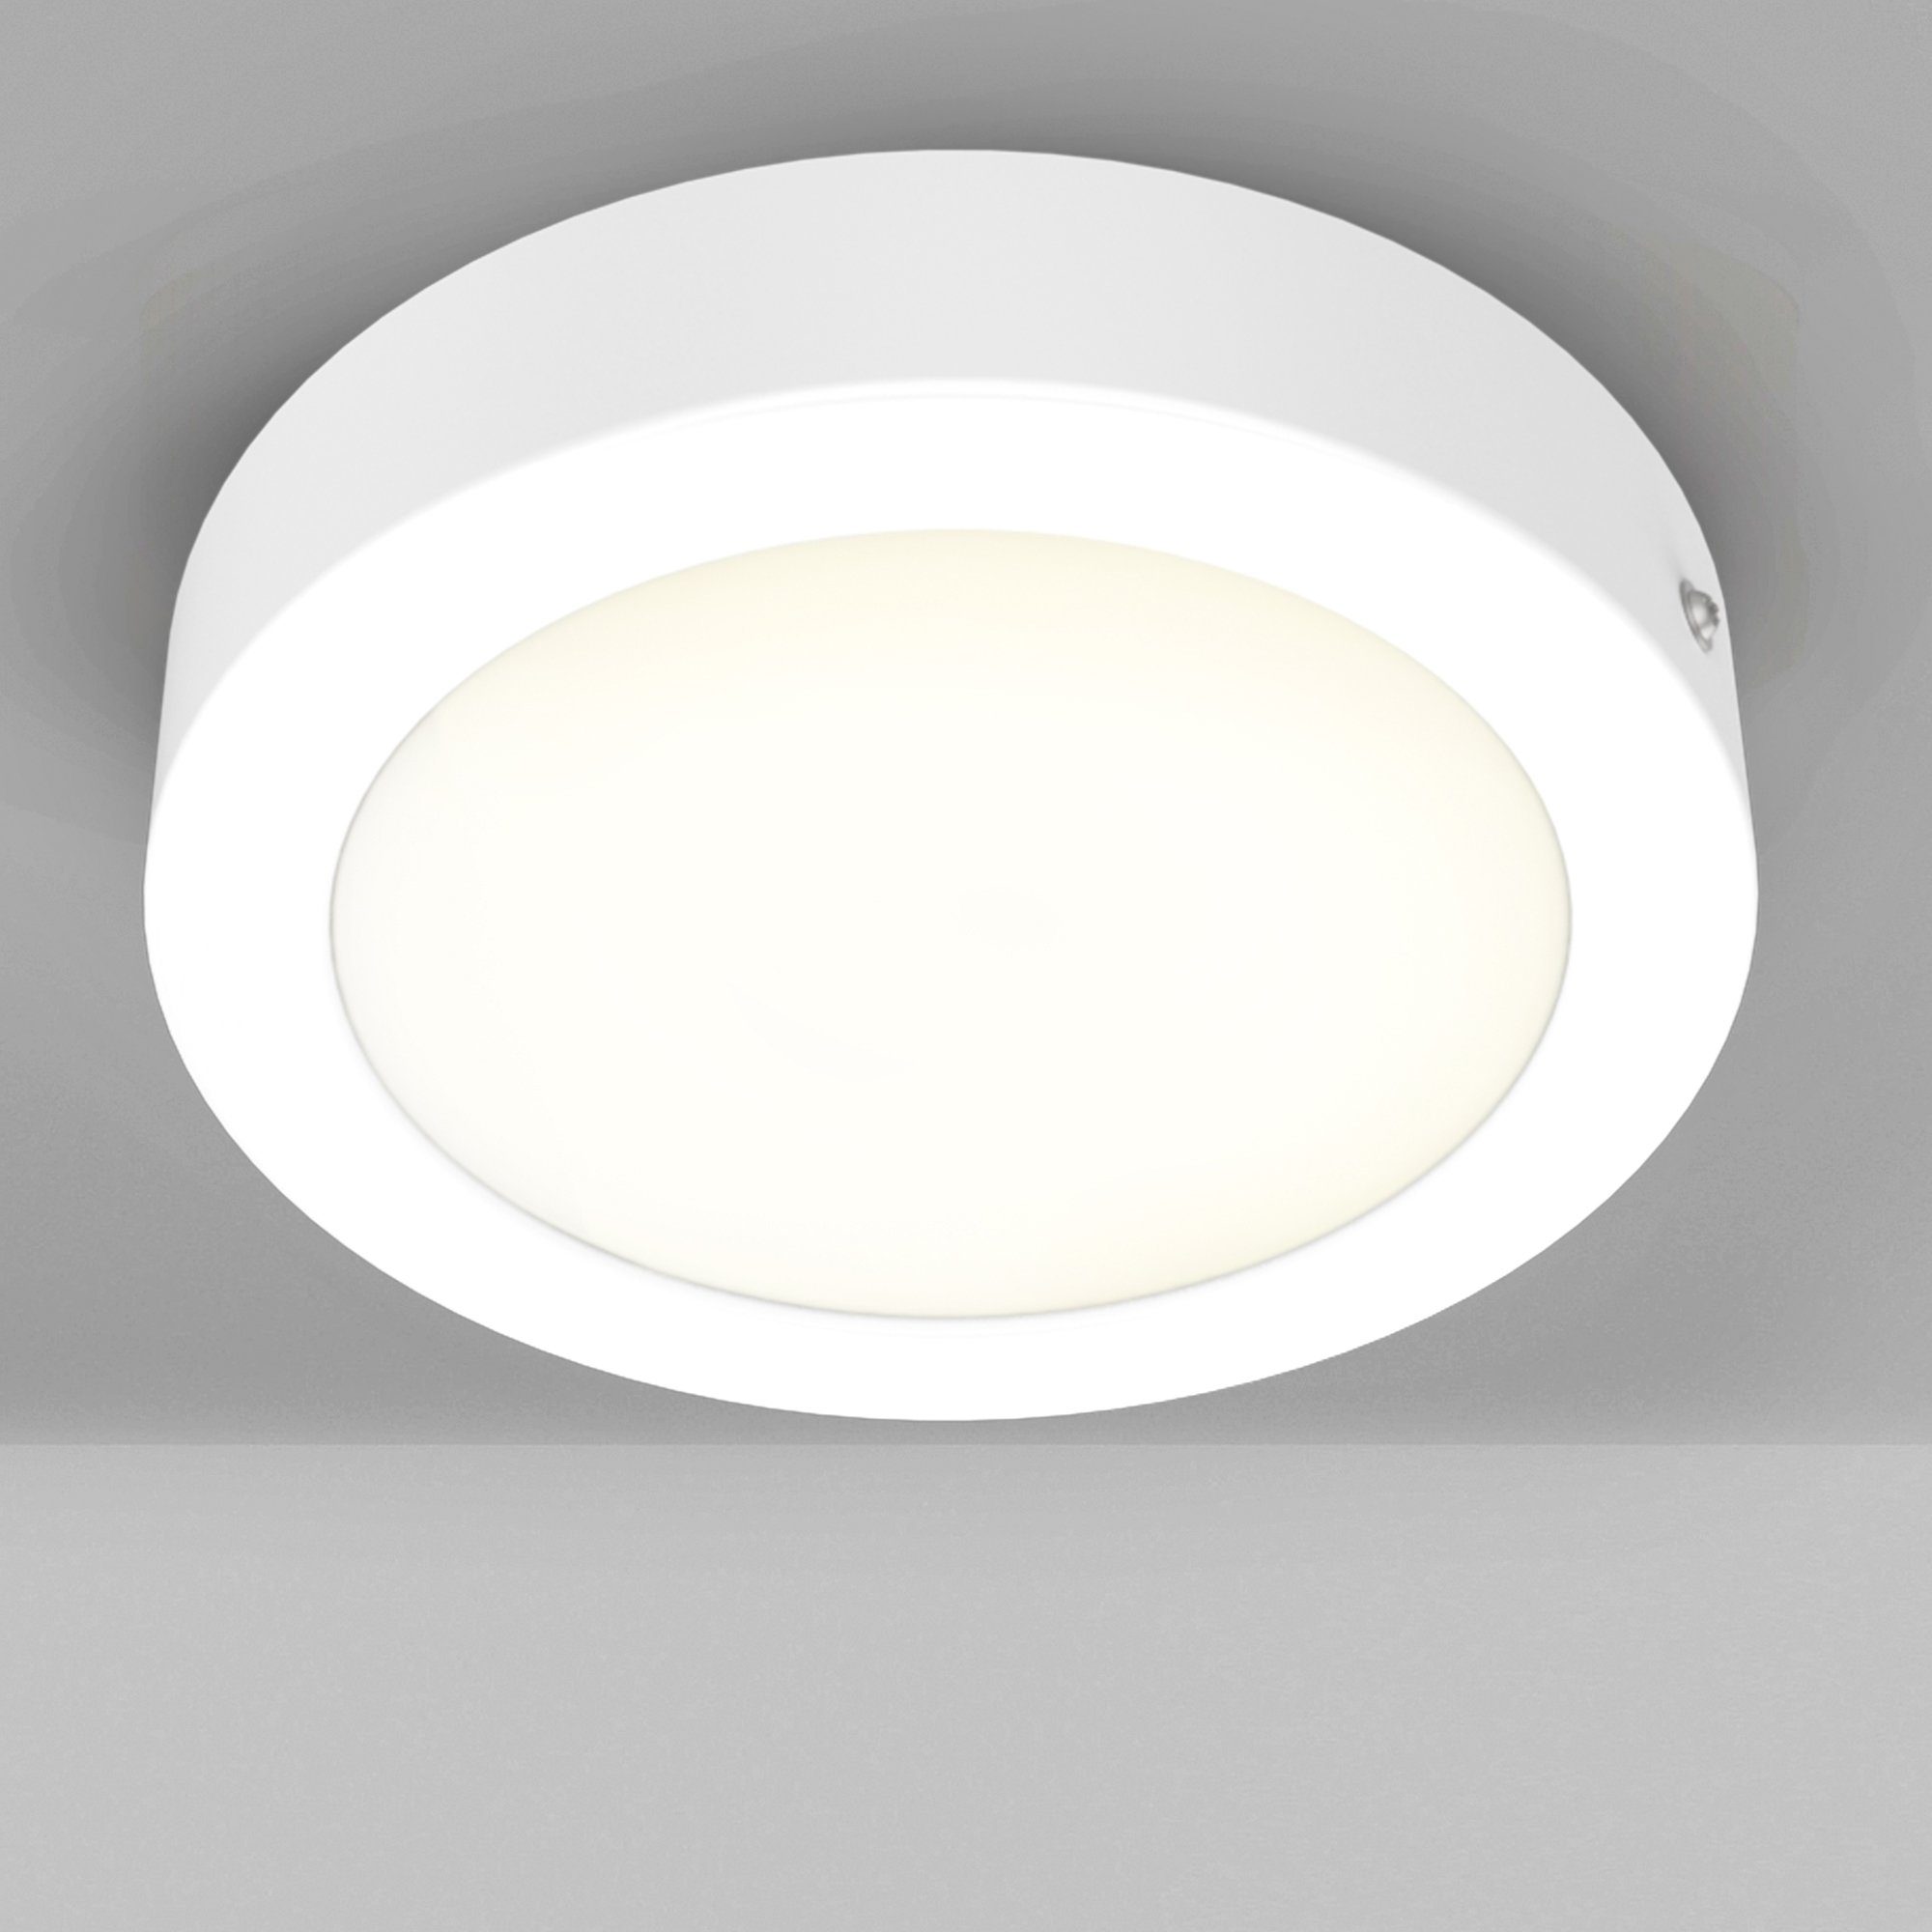 B.K.Licht LED Aufbaustrahler Garnet Weiß, LED fest integriert, Warmweiß,  Unterbauleuchte, Panel, 12W 900Lm, Aufputz-Decken Spots, Ø170mm